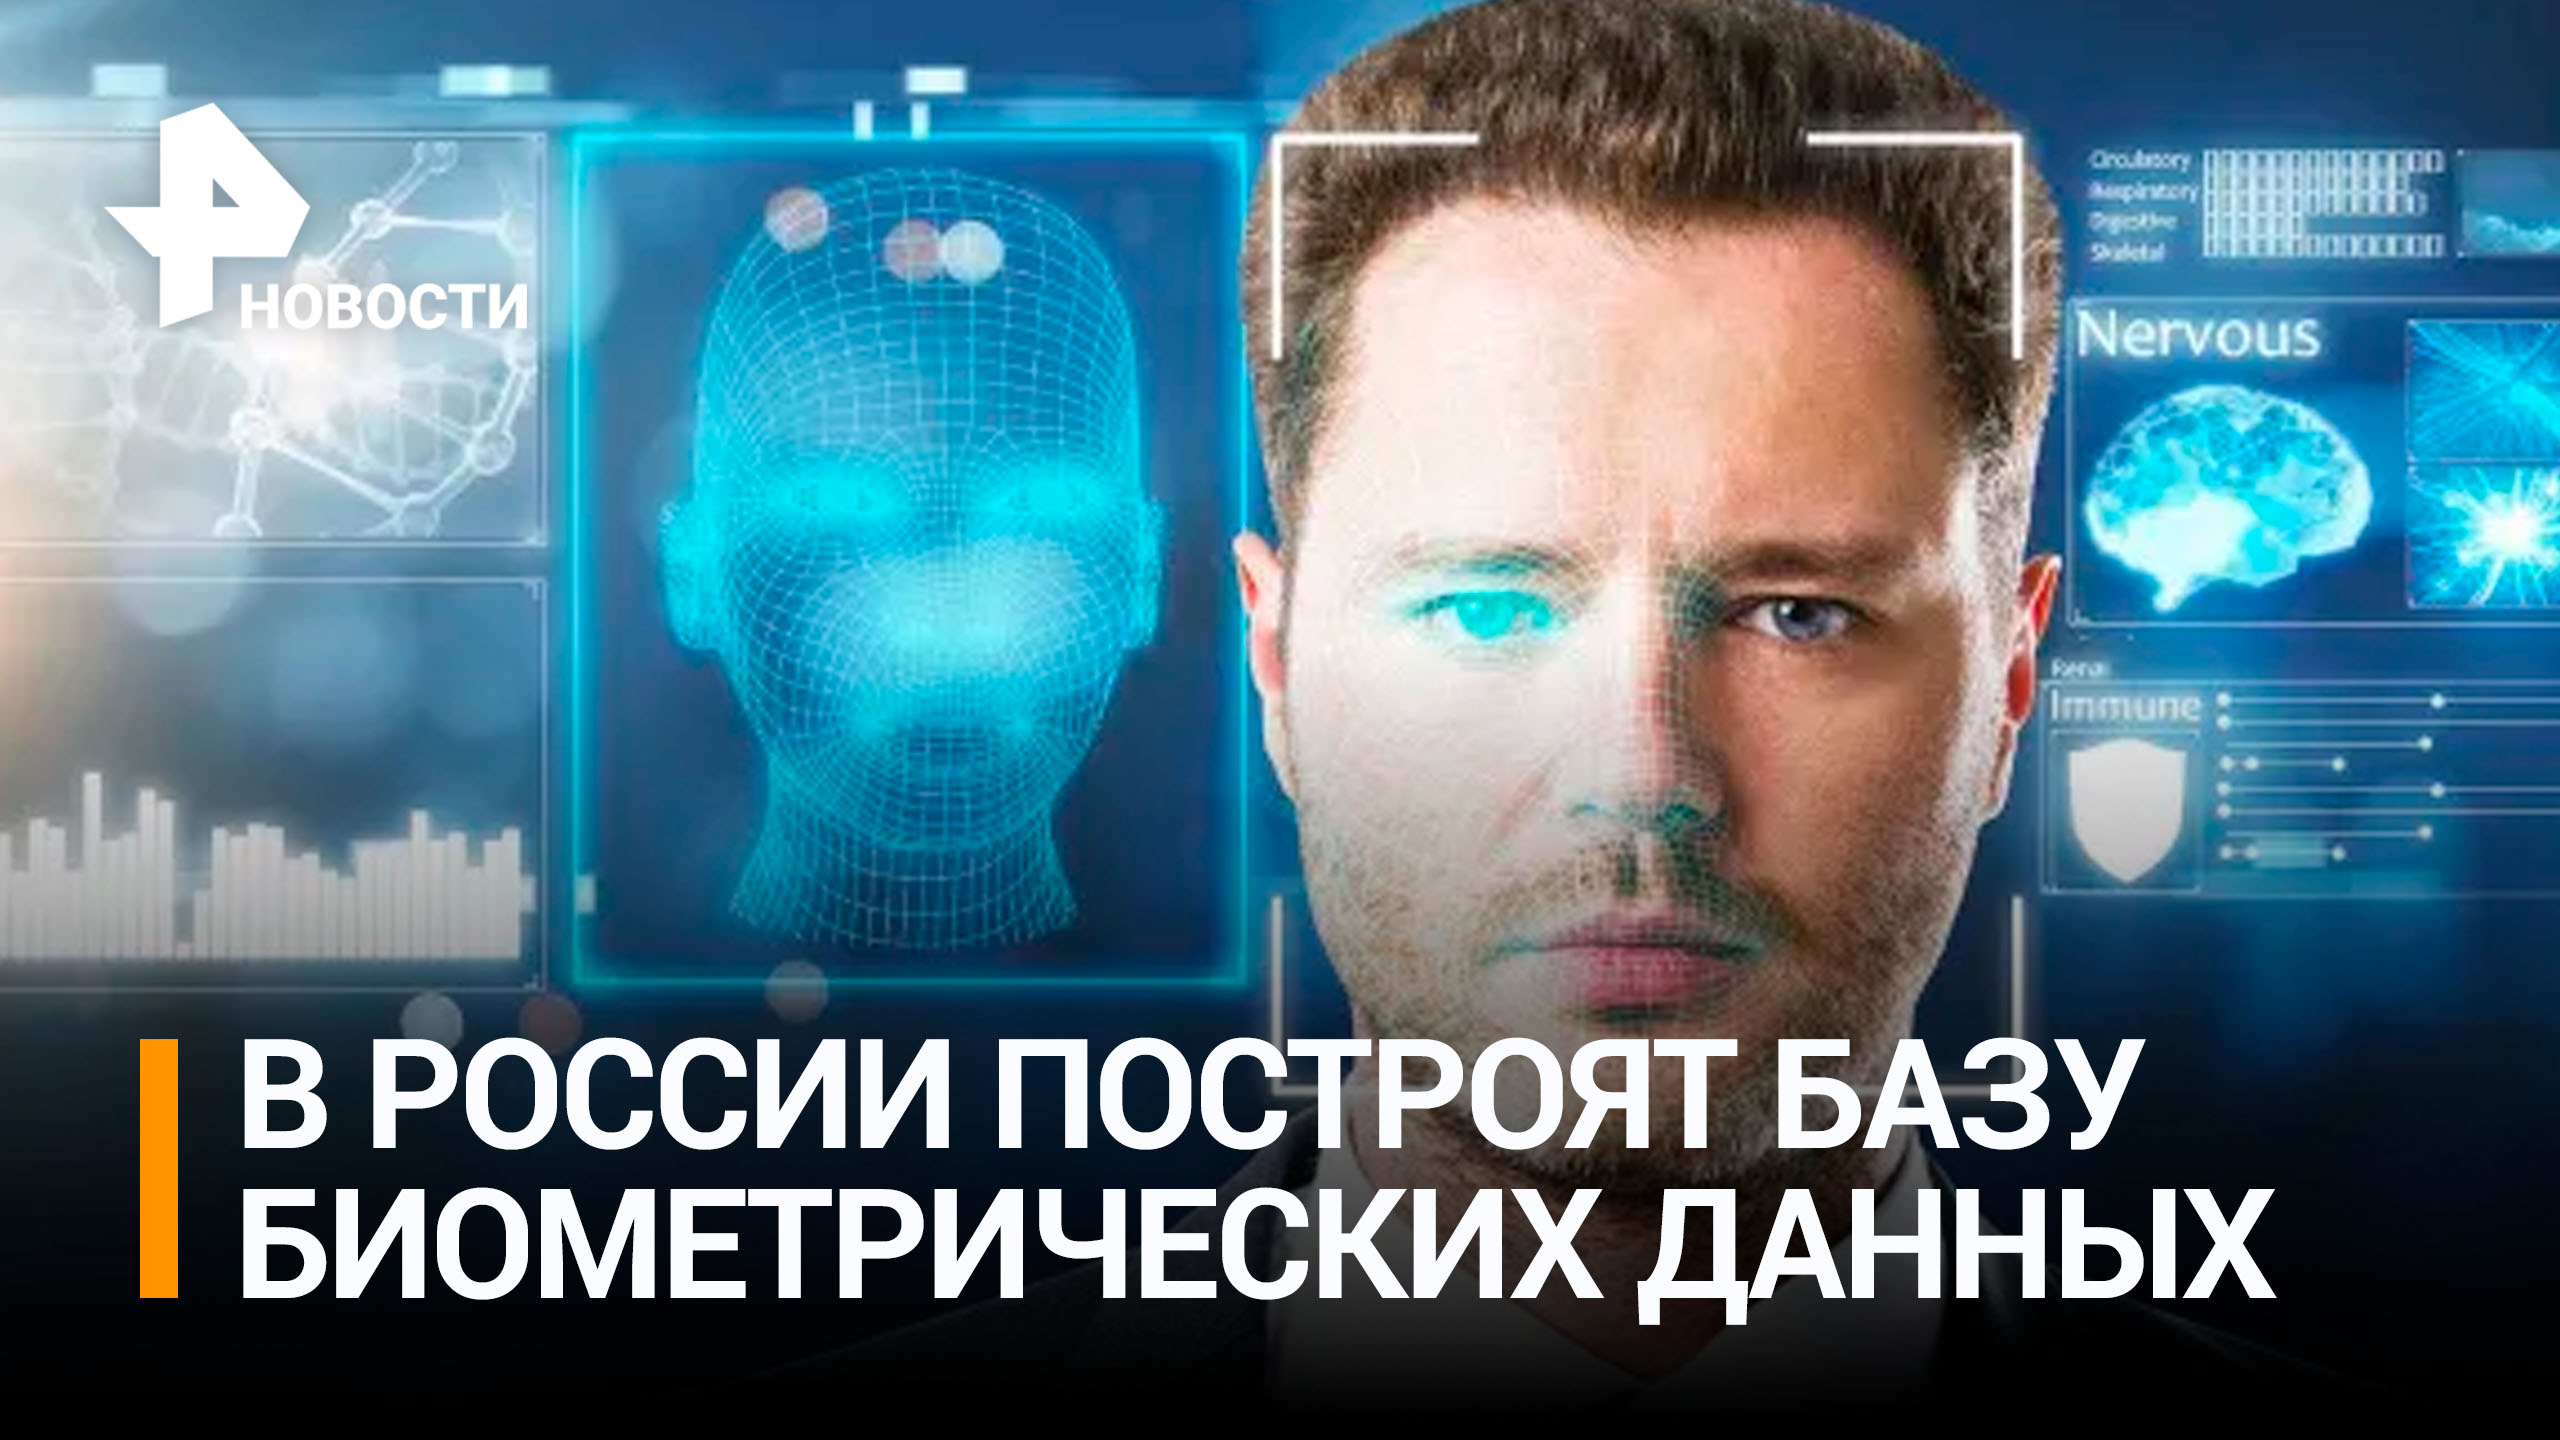 Закон о биометрических данных россиян приняли в Госдуме во втором чтении / РЕН Новости